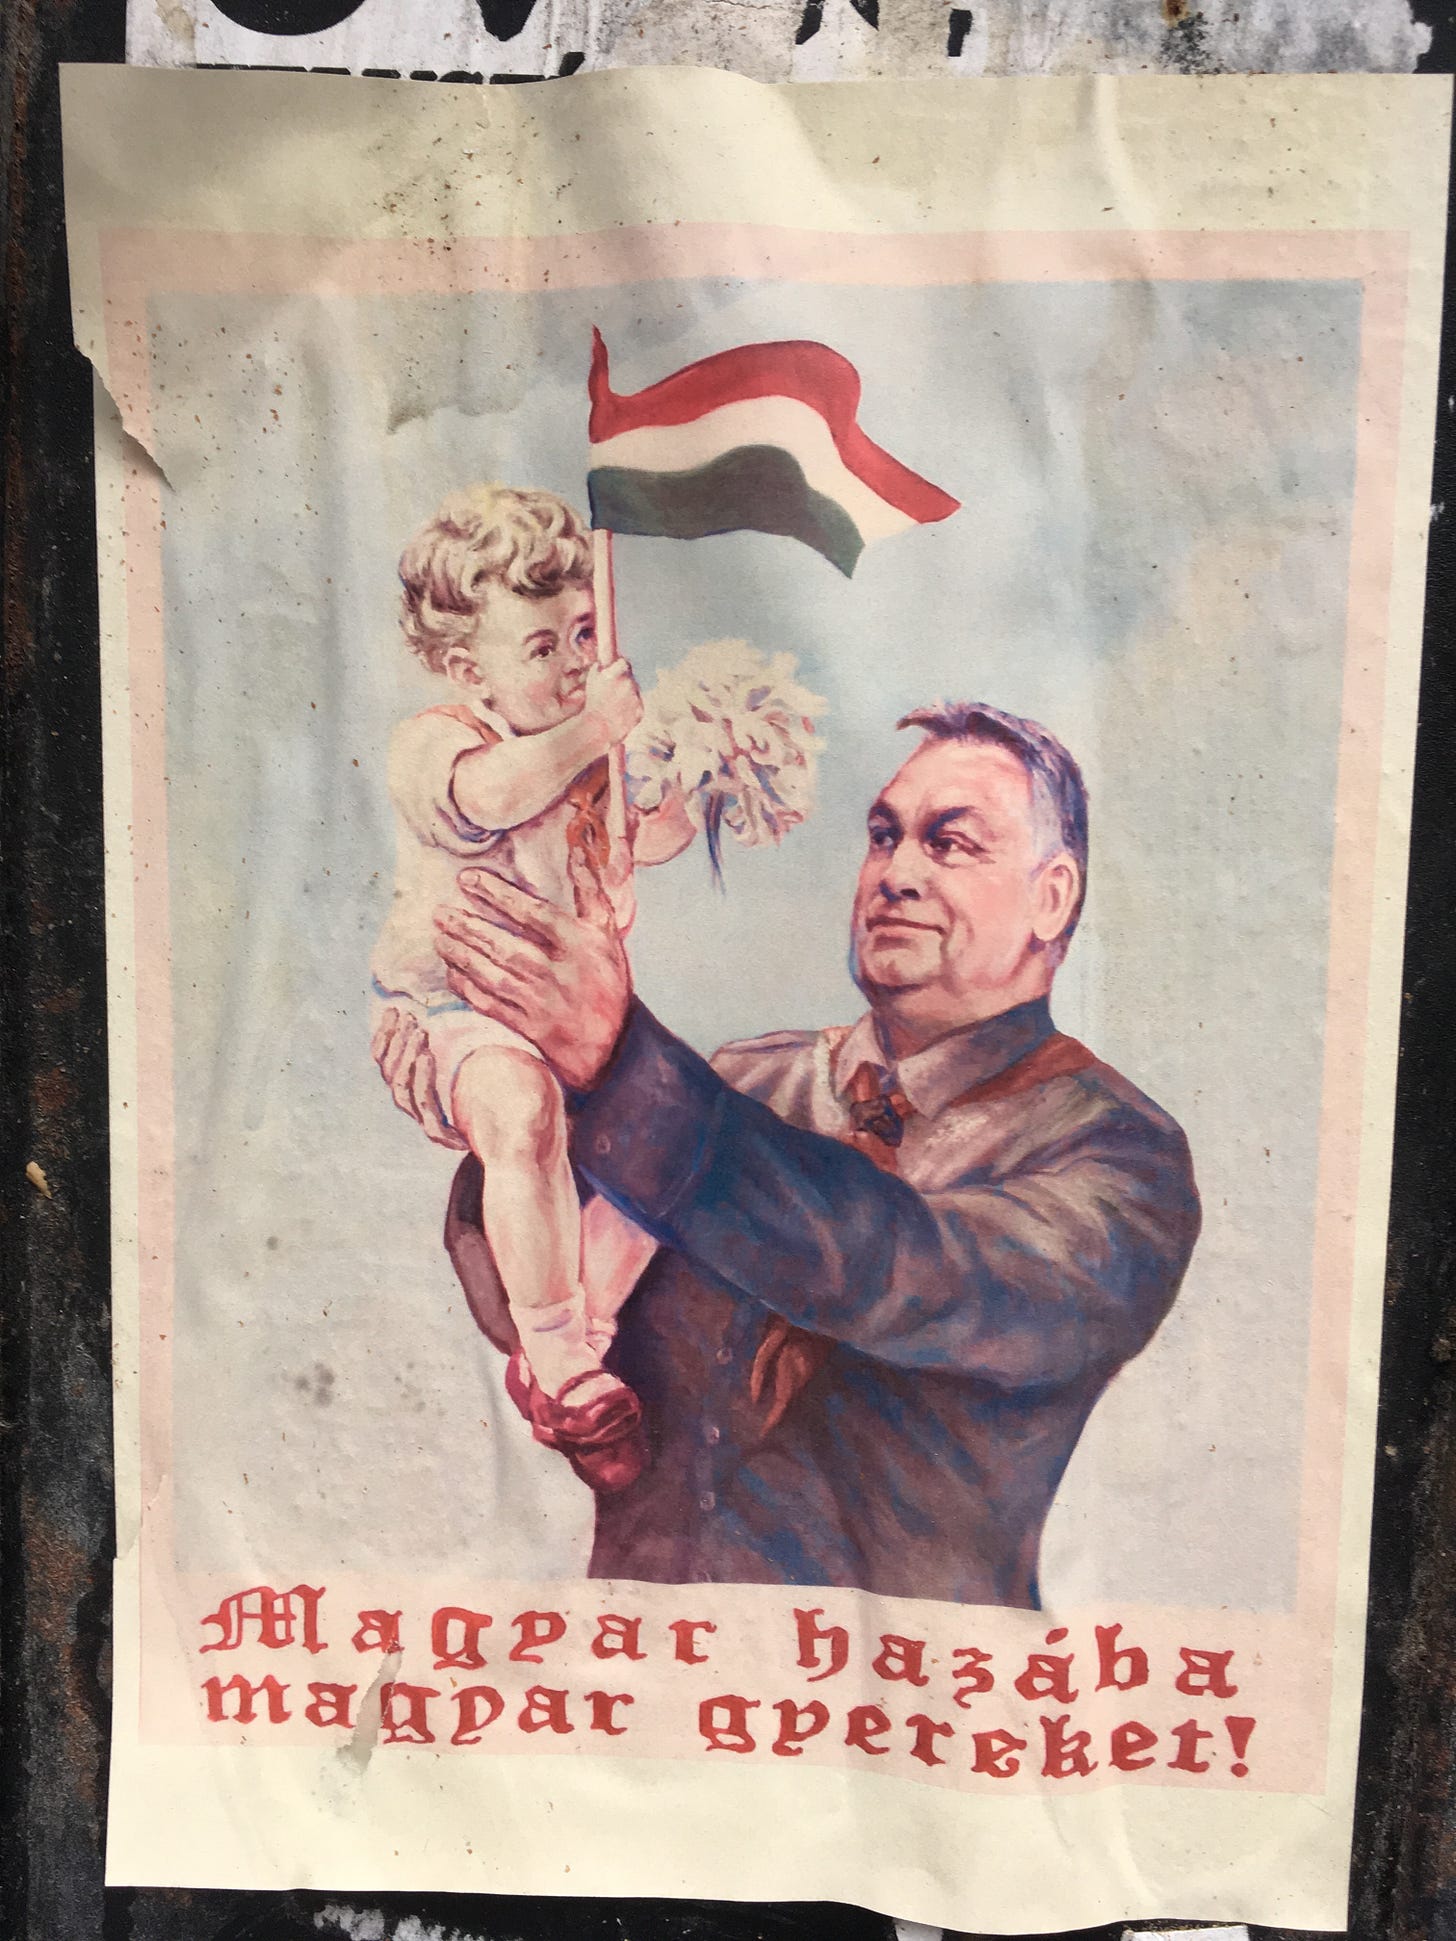 Poster of Hungarian Prime Minister Viktor Orbán